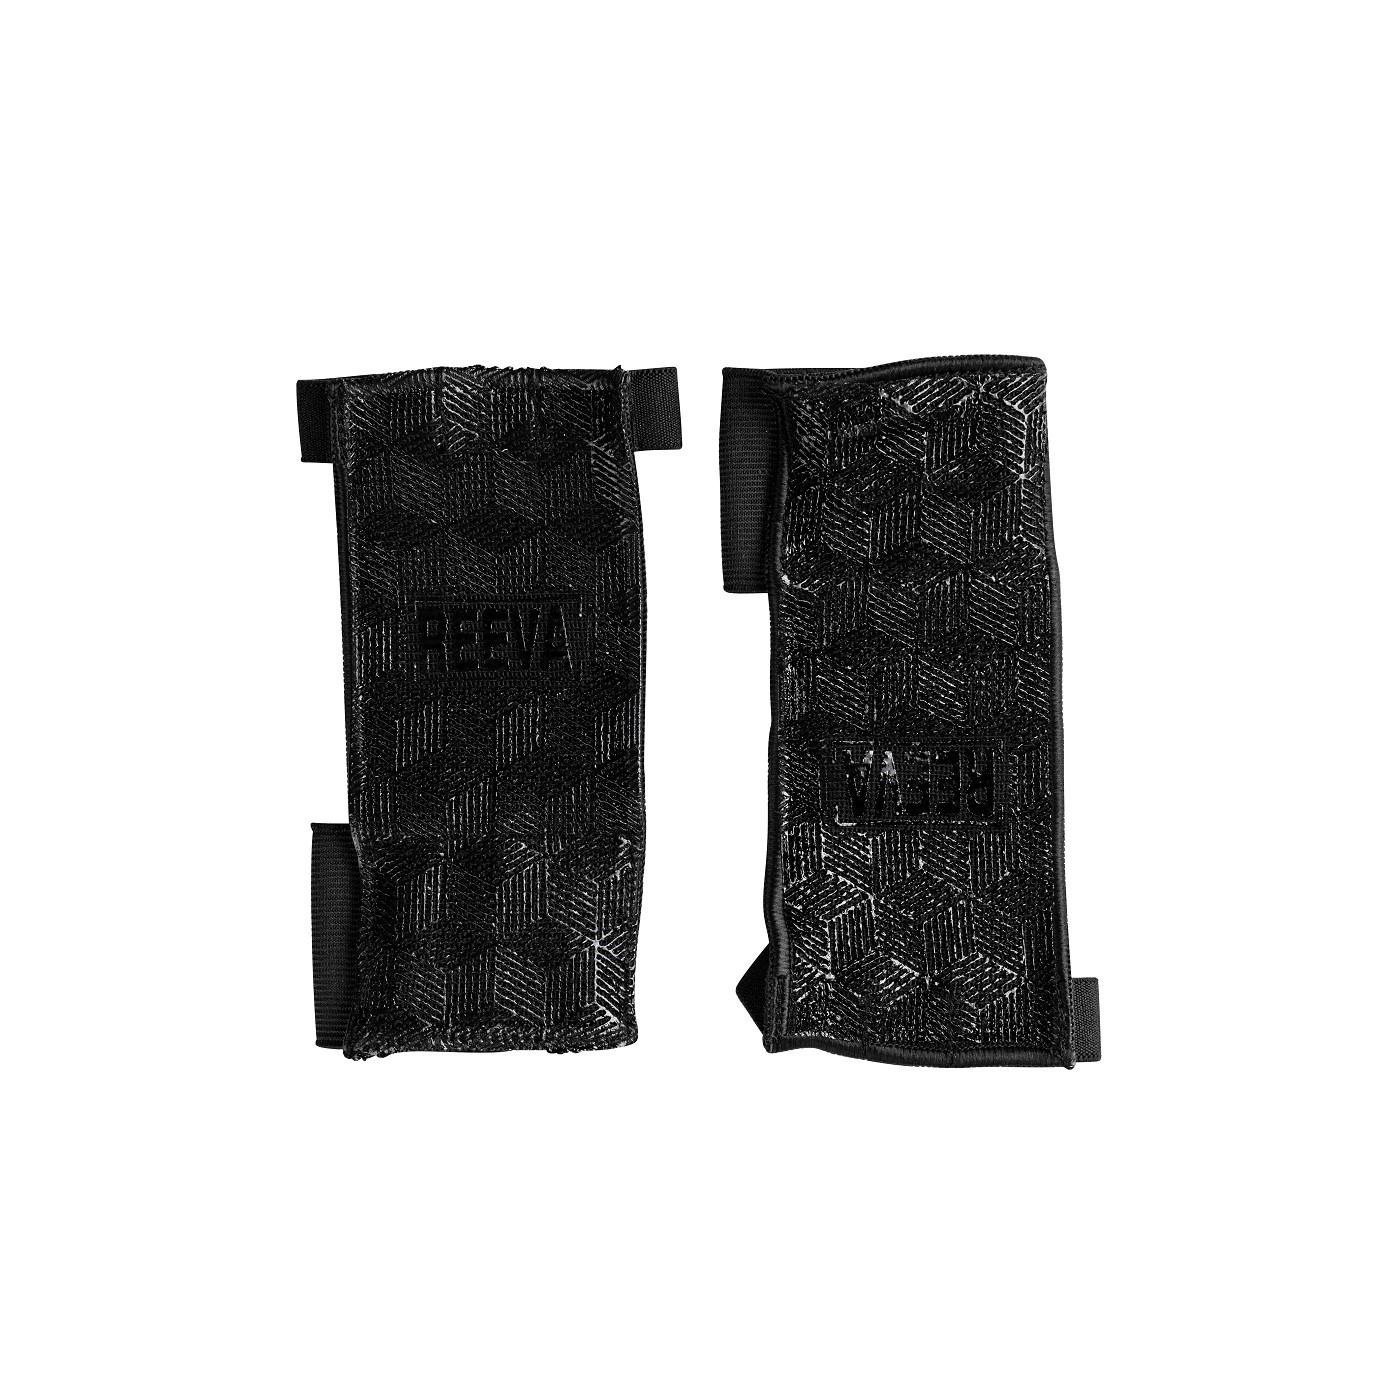 Reeva Ultra Feel Crossfit Handschoenen - M